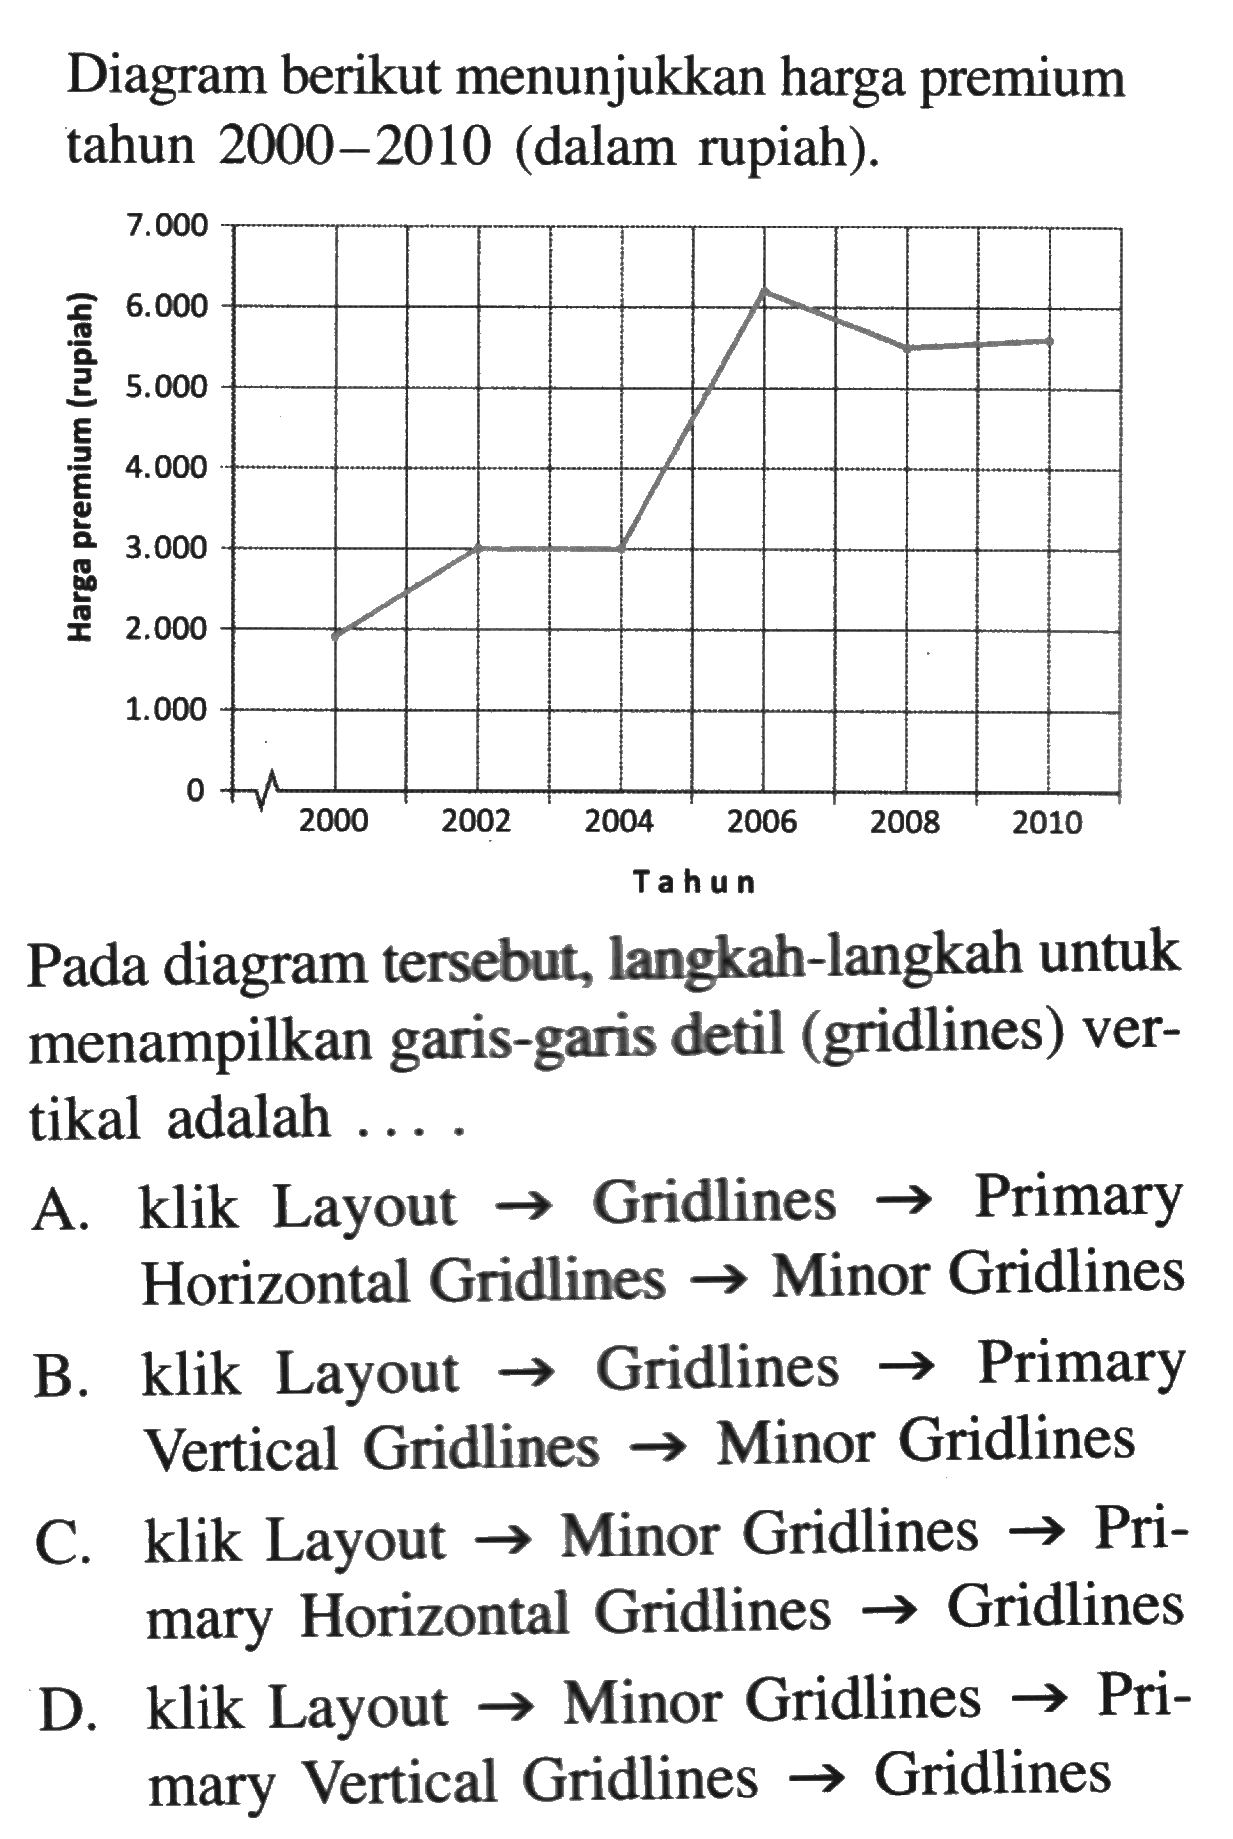 Diagram berikut menunjukkan harga premium tahun 2000-2010 (dalam rupiah). Pada diagram tersebut, langkah-langkah untuk menampilkan garis-garis detil (gridlines) vertikal adalah .... A. klik Layout  ->  Gridlines  ->  Primary Horizontal Gridlines  ->  Minor Gridlines B. klik Layout  ->  Gridlines  ->  Primary Vertical Gridlines  ->  Minor Gridlines C. klik Layout  ->  Minor Gridlines  ->  Primary Horizontal Gridlines  ->  Gridlines D. klik Layout  ->  Minor Gridlines  ->  Primary Vertical Gridlines  ->  Gridlines